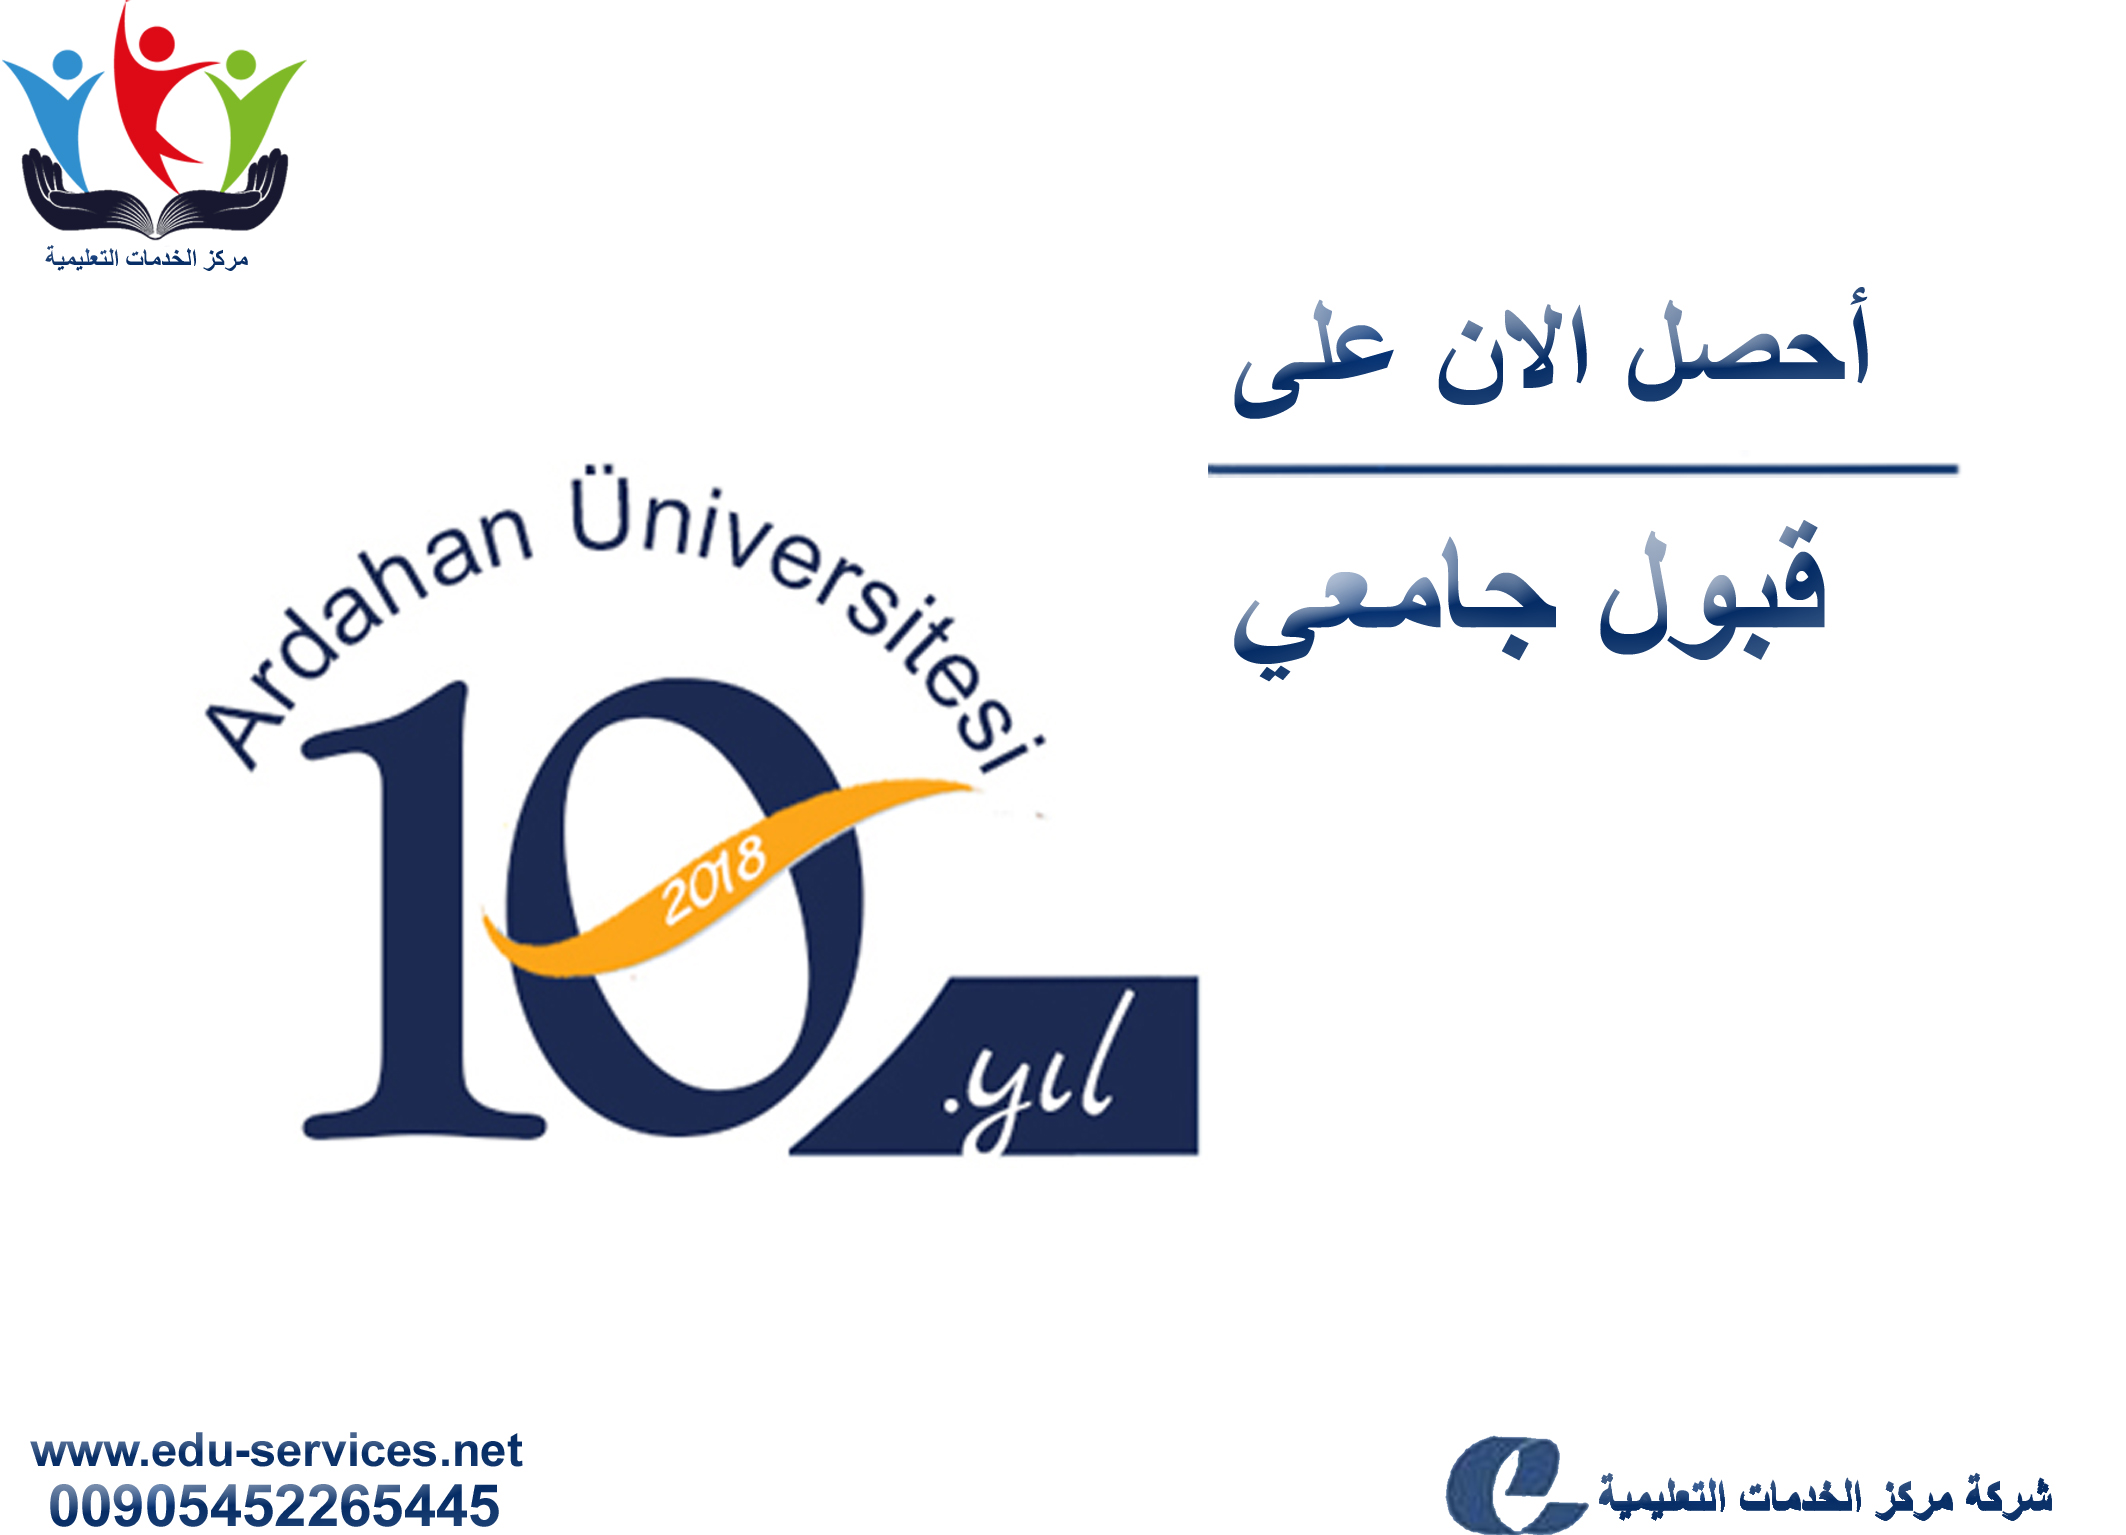 افتتاح التسجيل في جامعة اردهان للعام 2018-2019